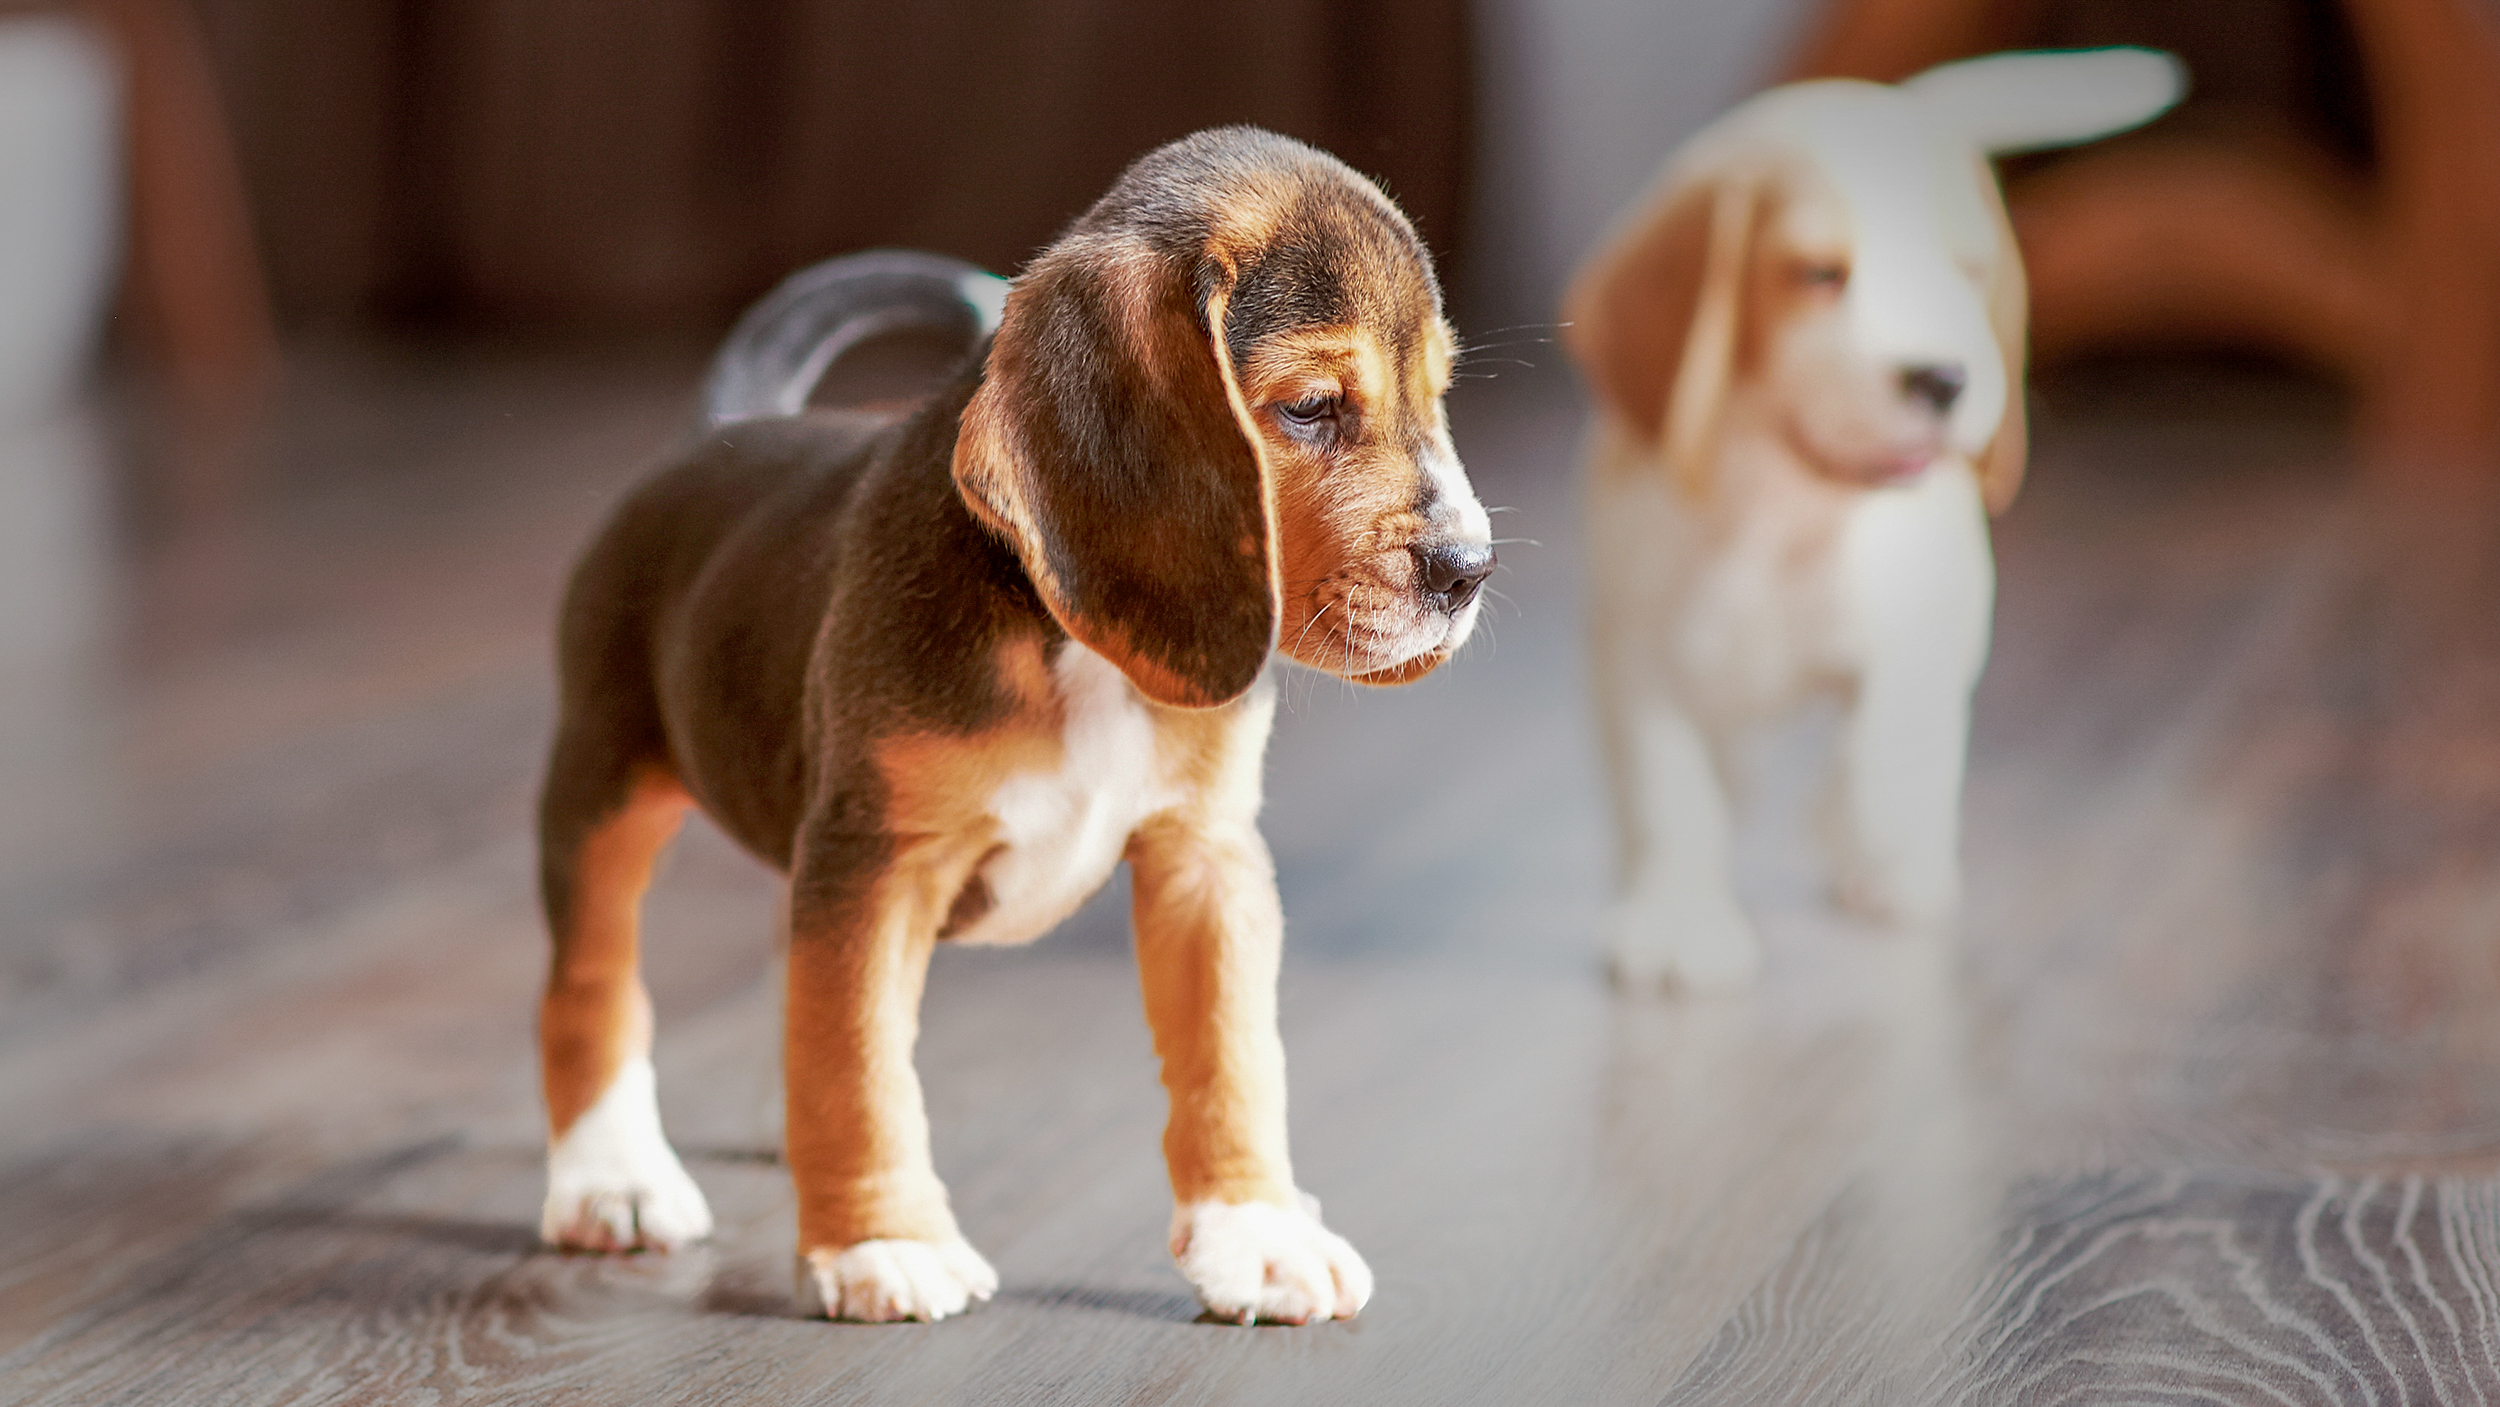 Beagles puppy's binnen staand op een houten vloer.